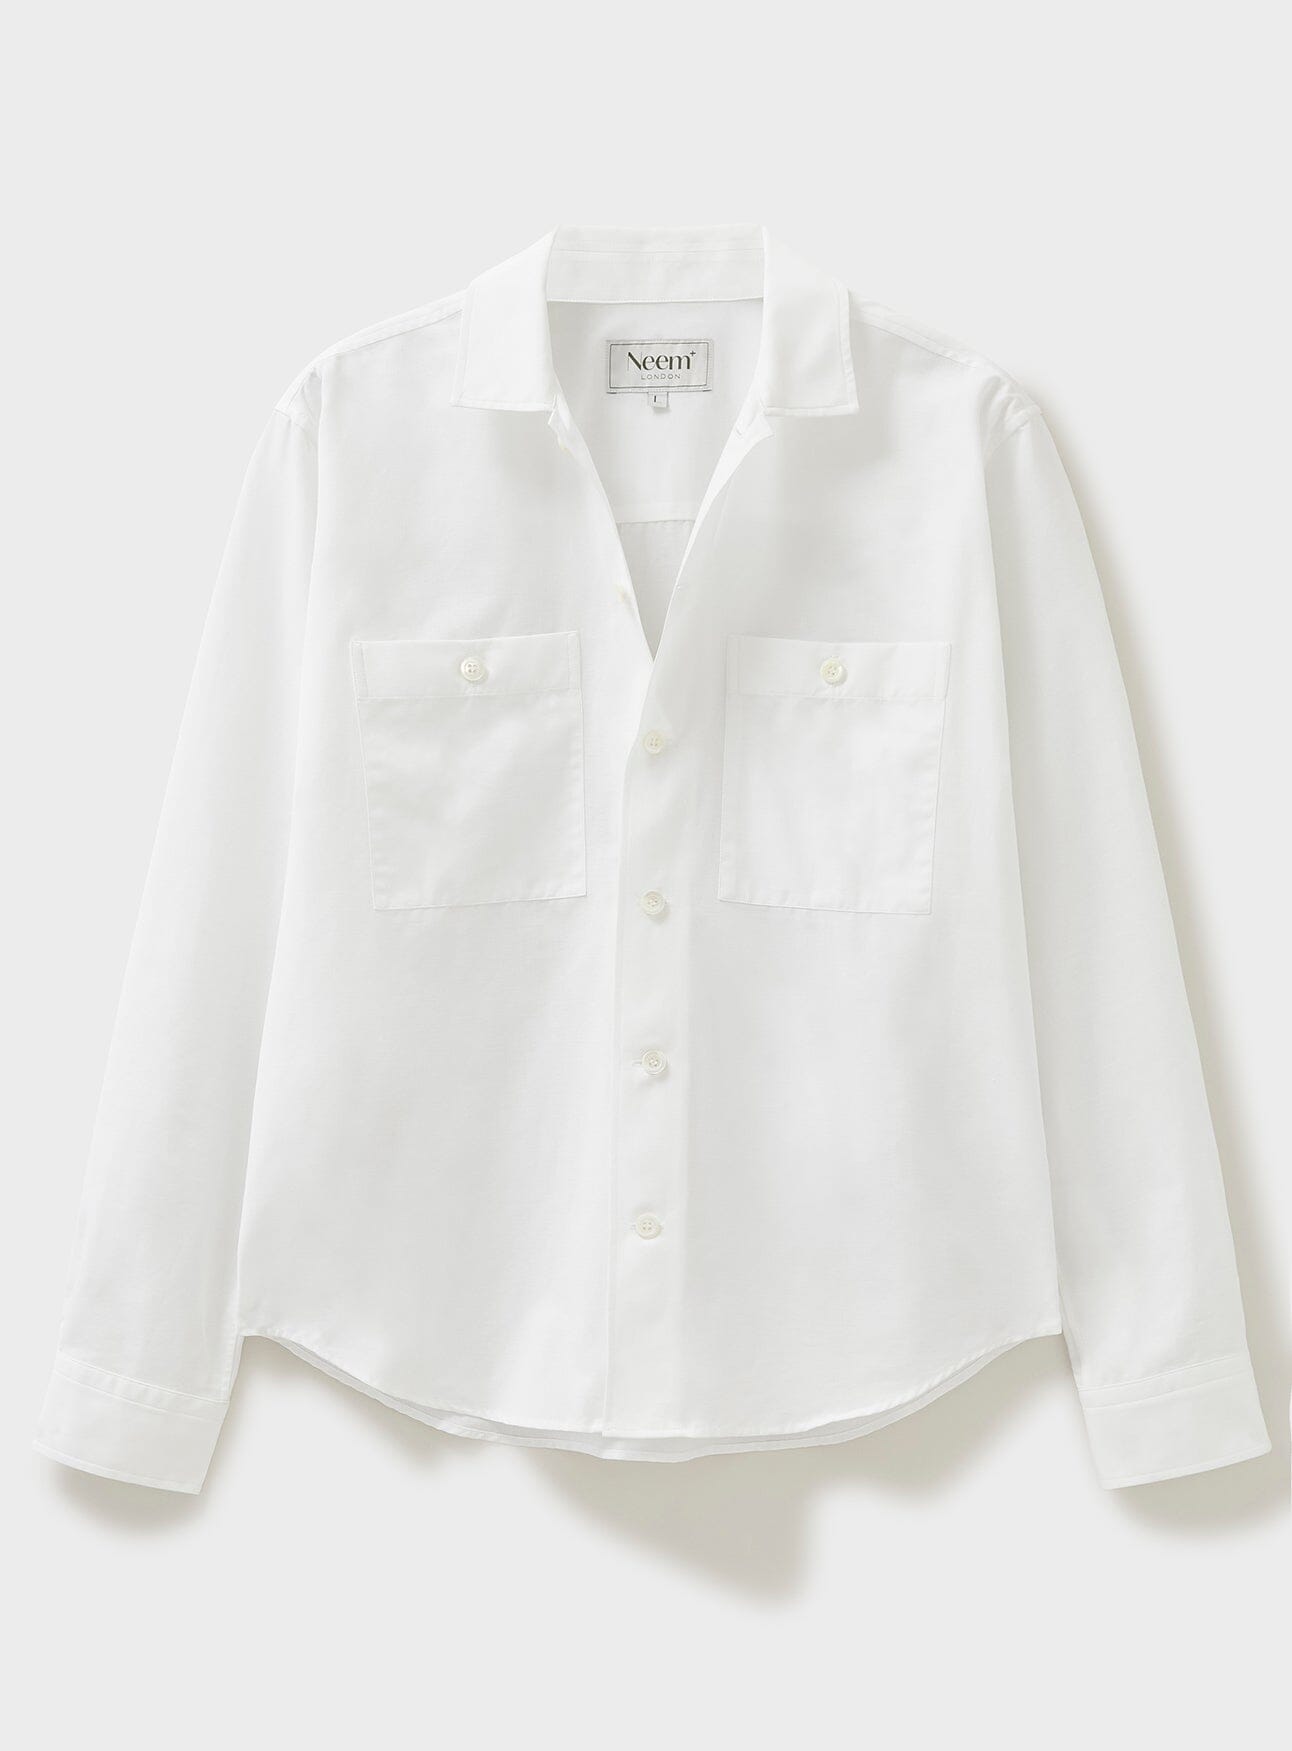 long sleeve white shirt, sustainable clothing